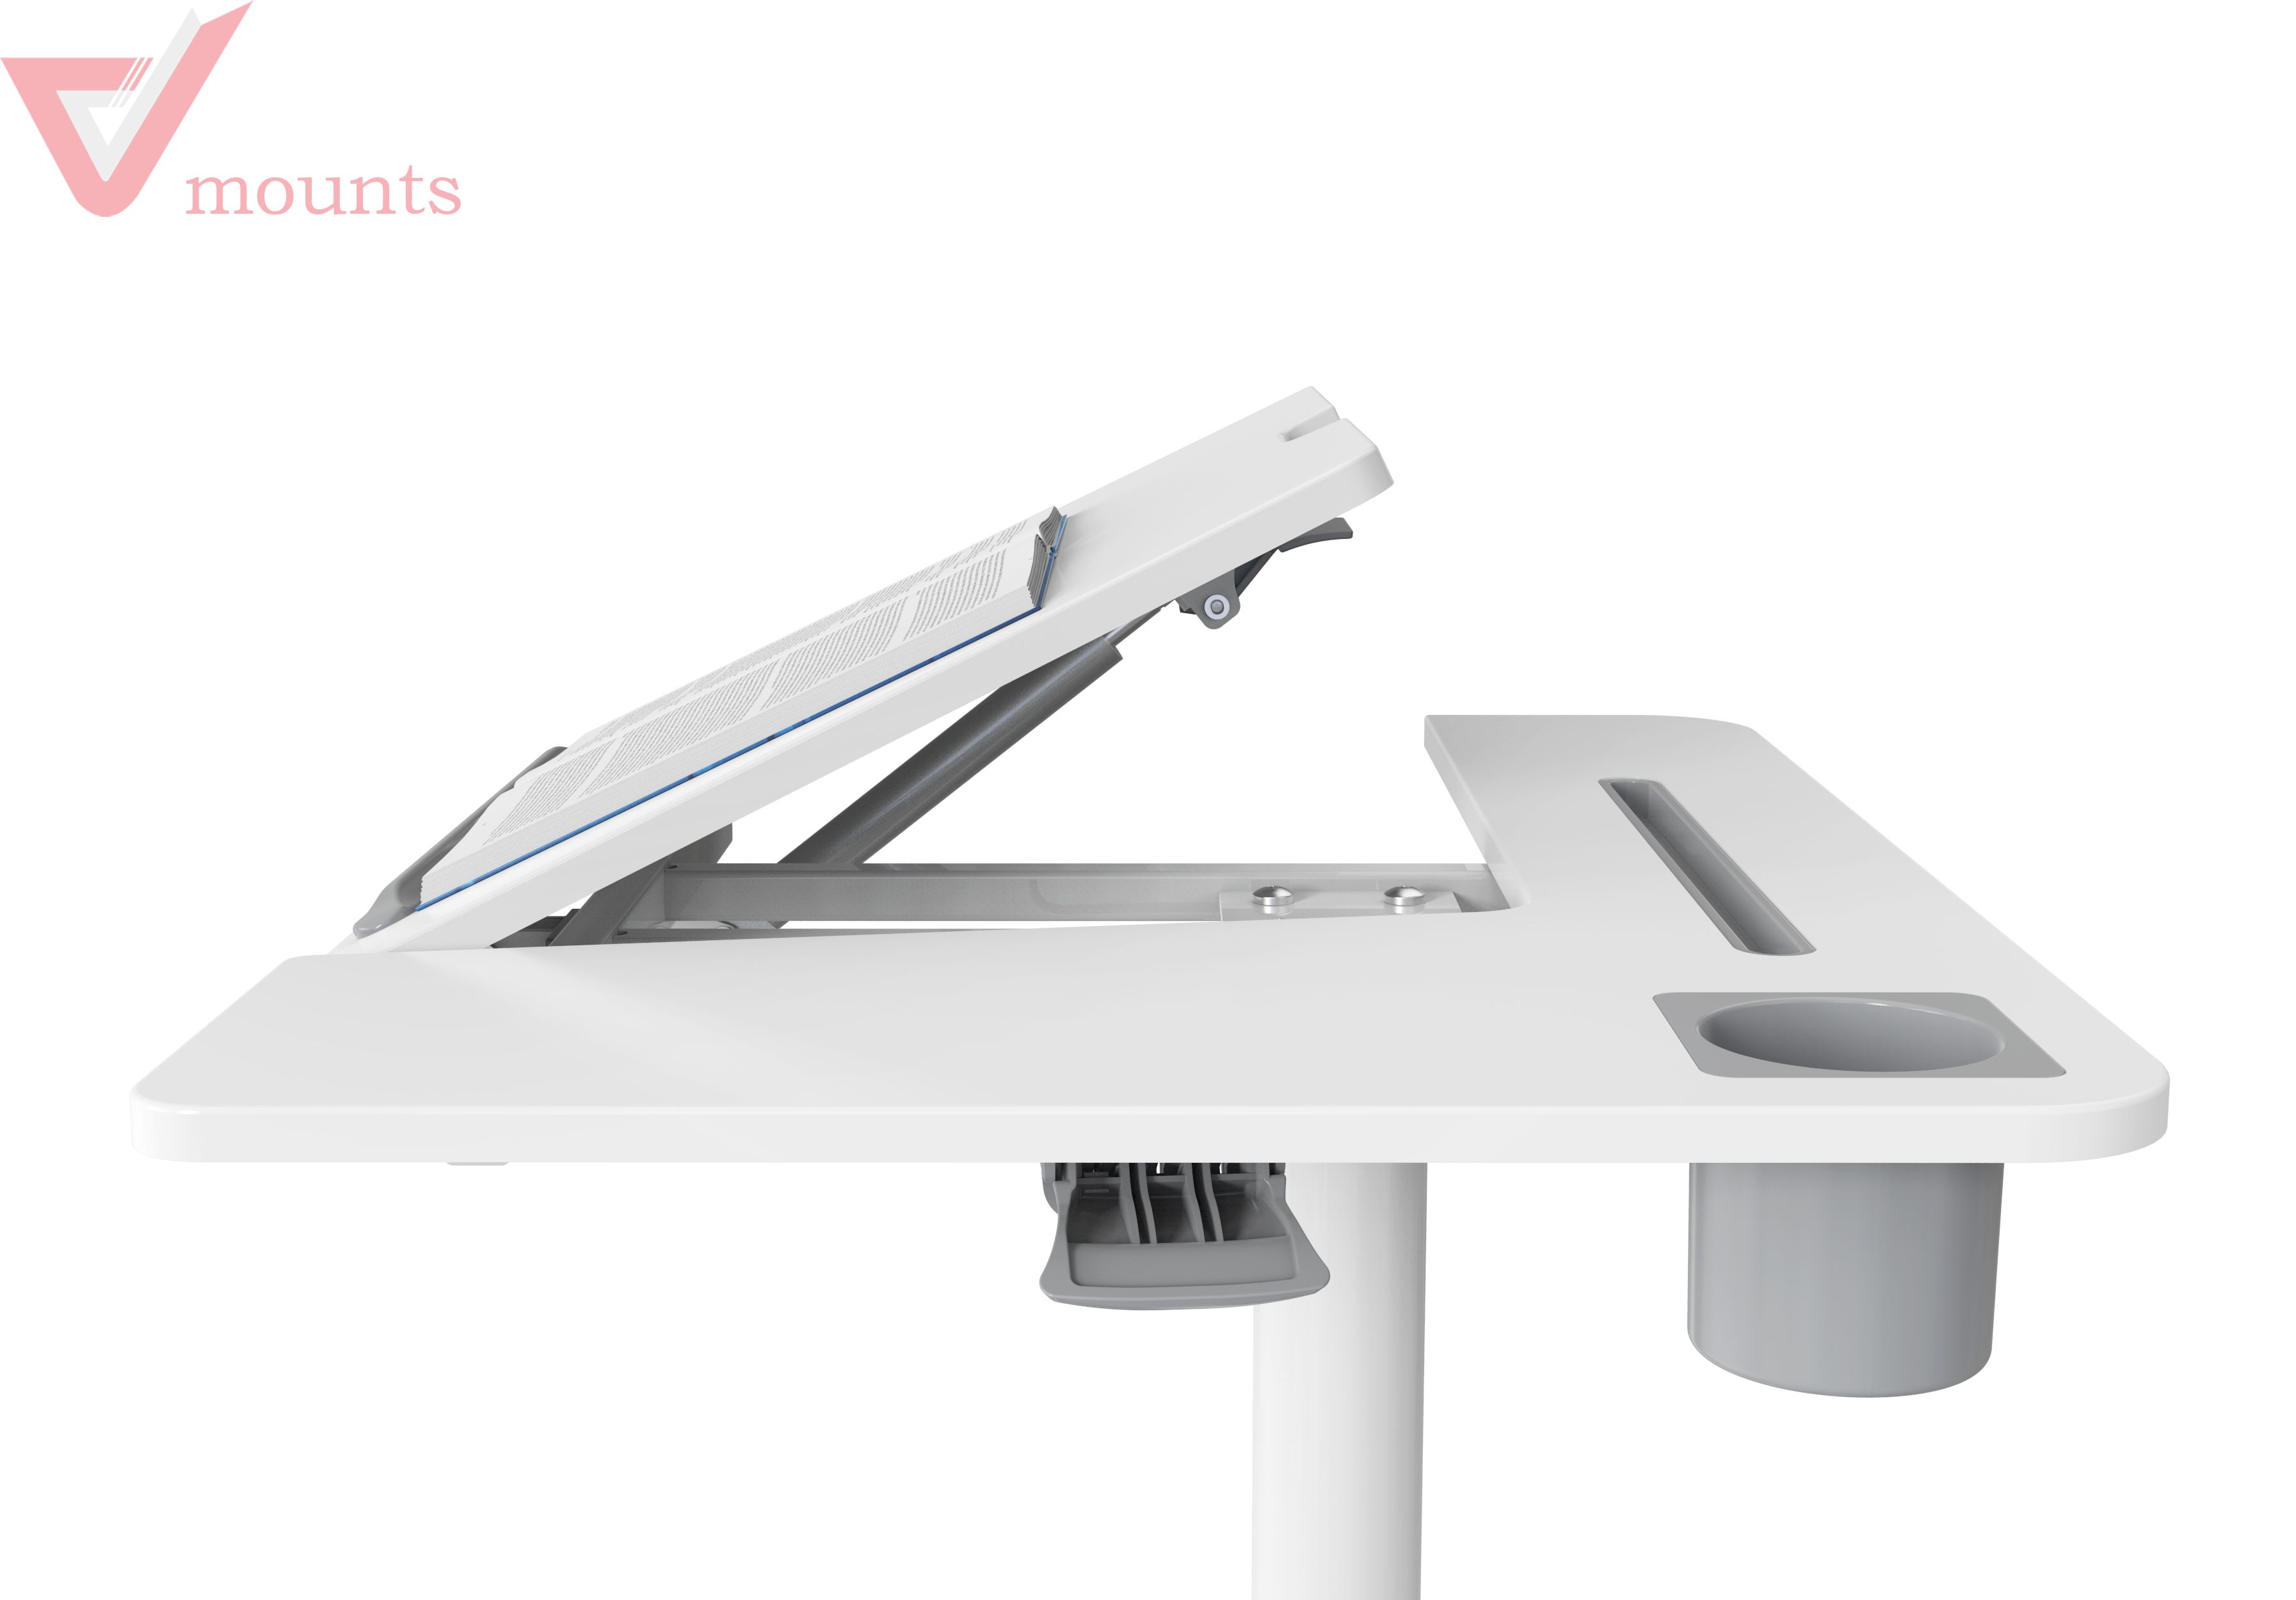 V-mounts Mobile Laptop Desks